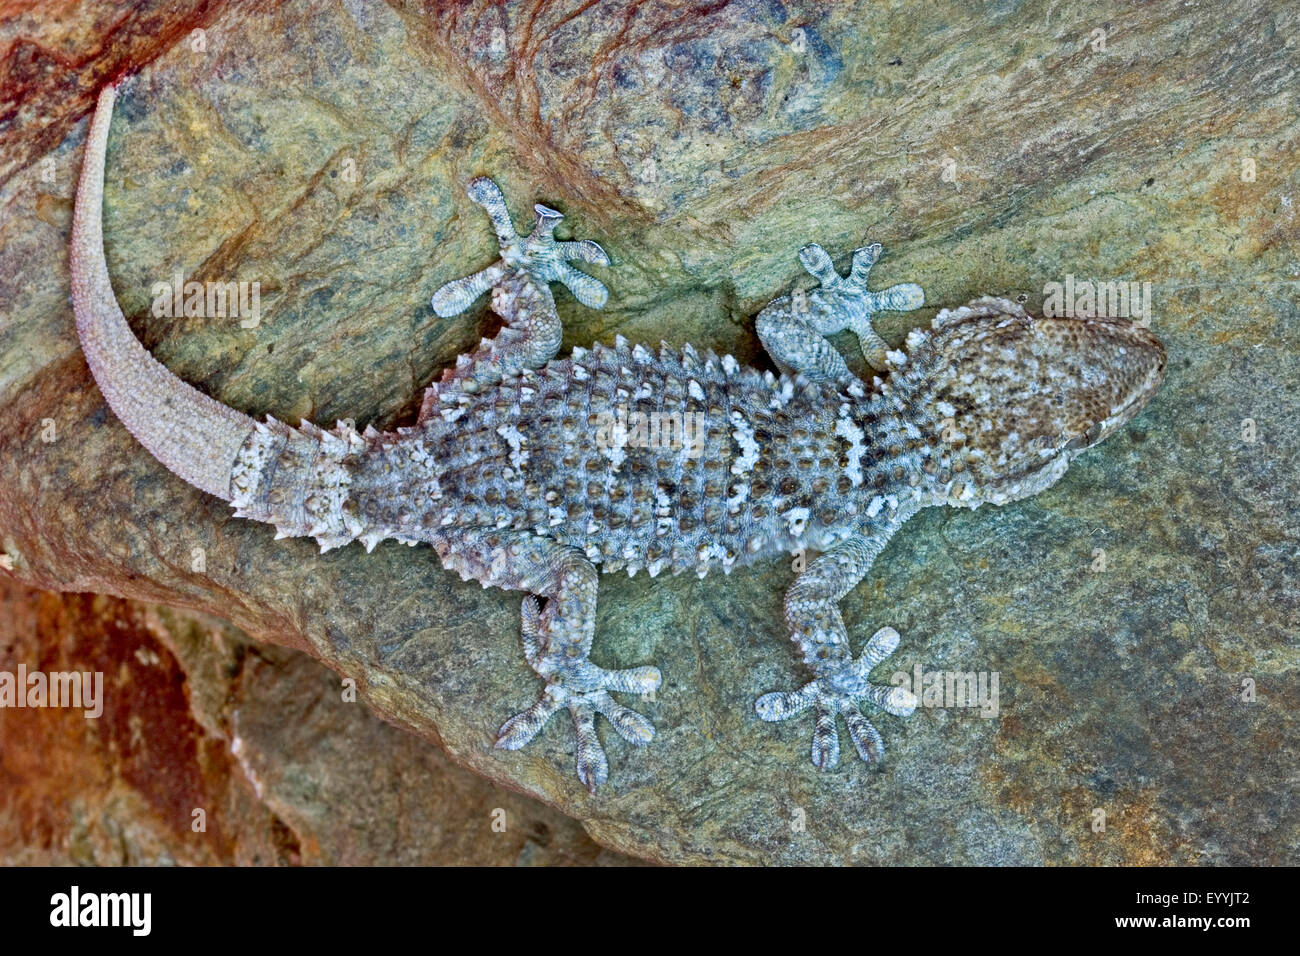 Gemeinsame Wand Gecko, maurischer Gecko, maurischen Wand Gecko, Salamanquesa, Krokodil Gecko, europäische gemeinsame Gecko, Maurita Naca Gecko (Tarentola Mauritanica), Portrait Stockfoto